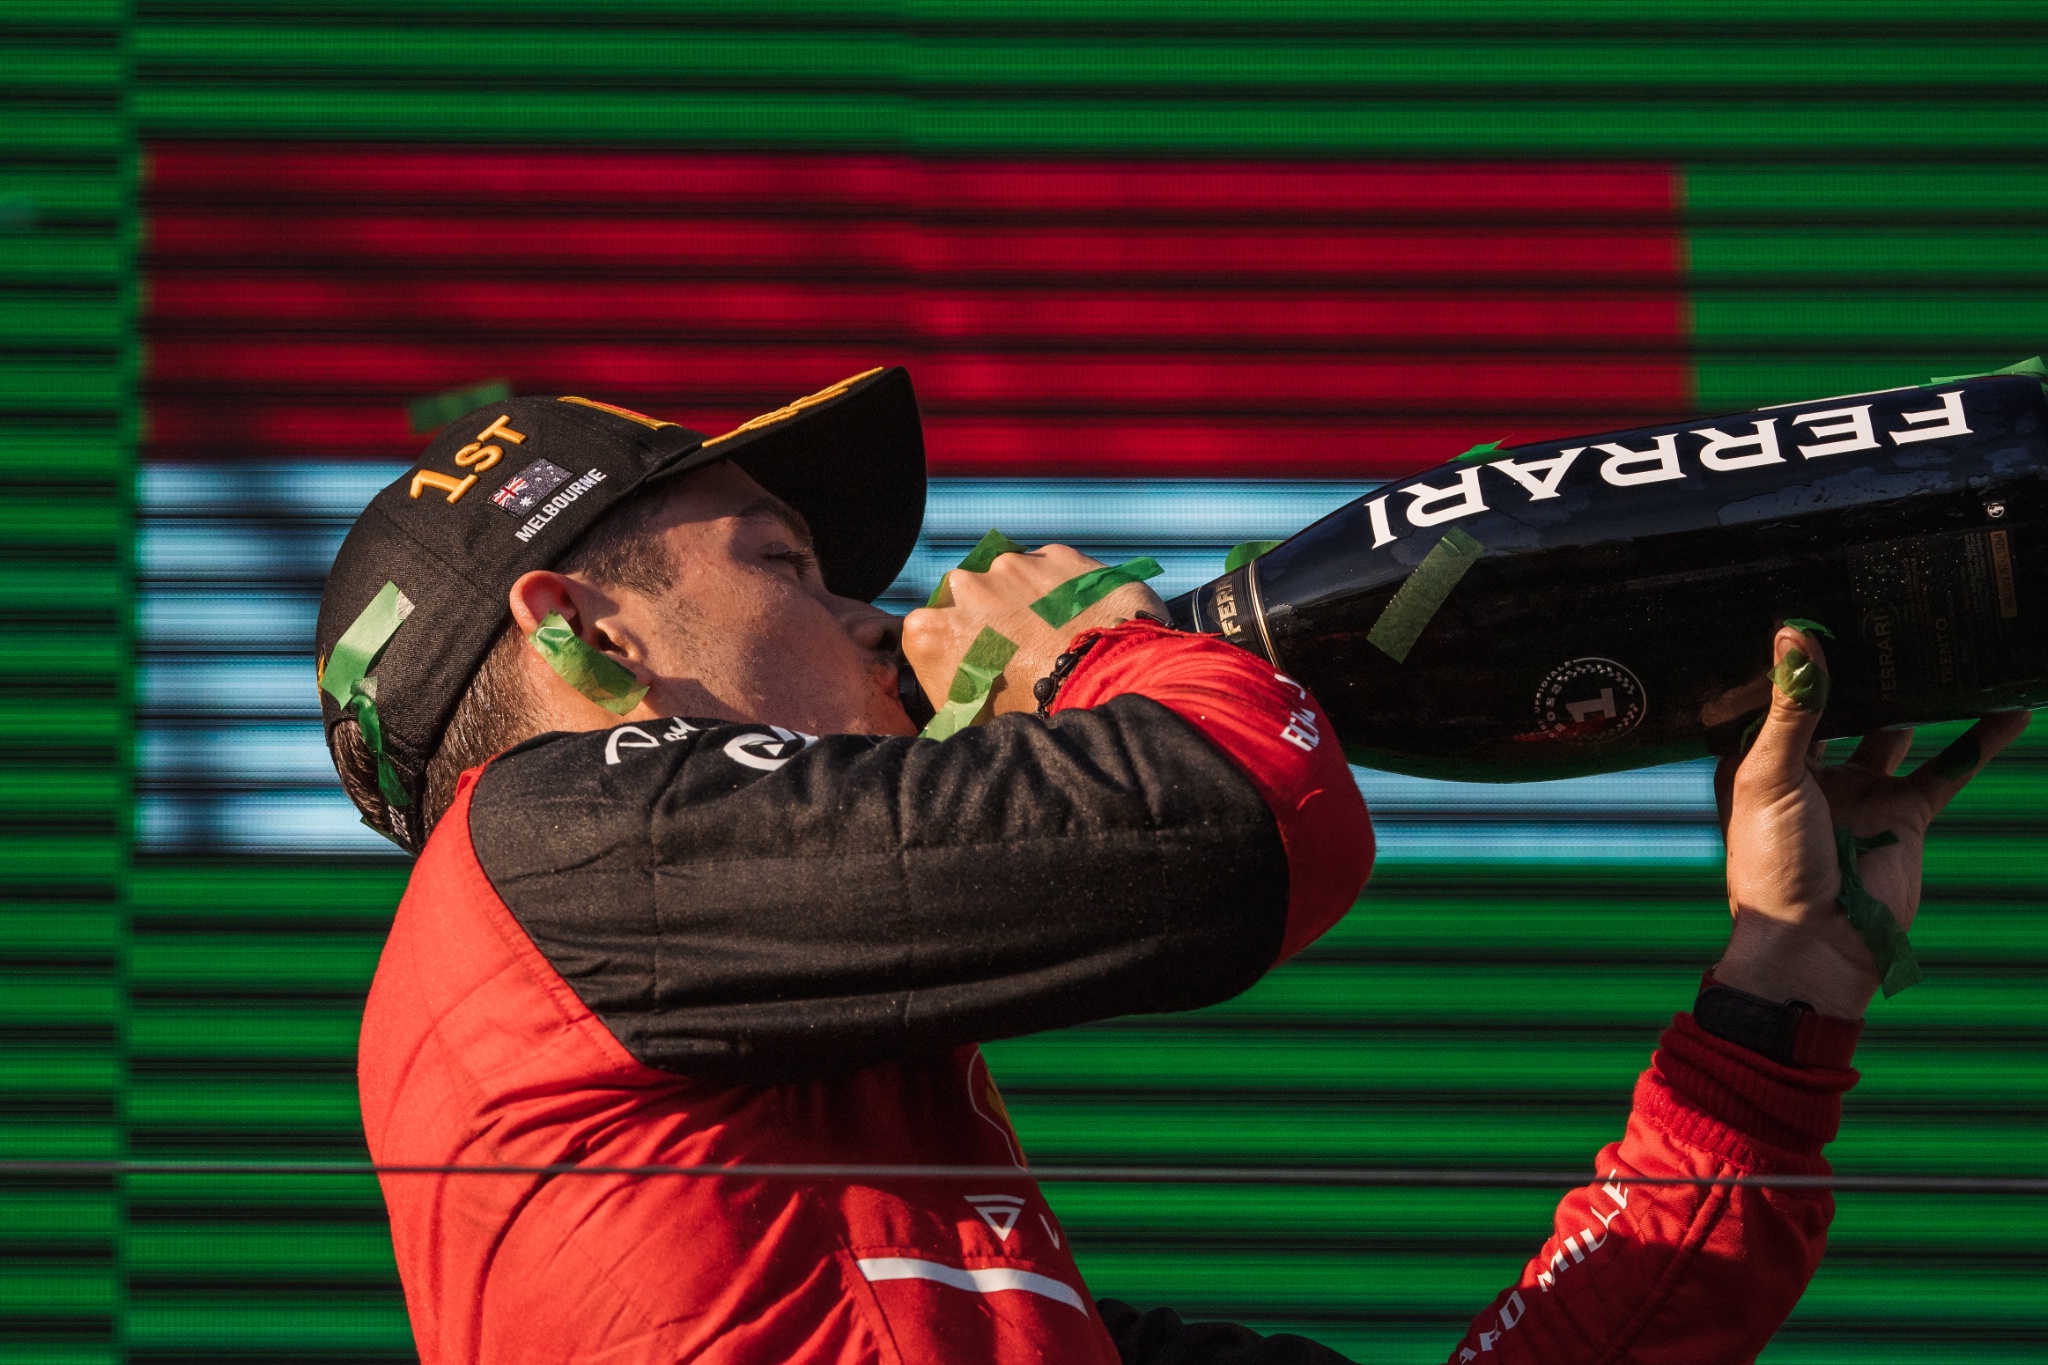 Pemenang balapan Charles Leclerc (MON) Ferrari merayakannya di podium. Kejuaraan Dunia Formula 1, Rd 3, Australian Grand